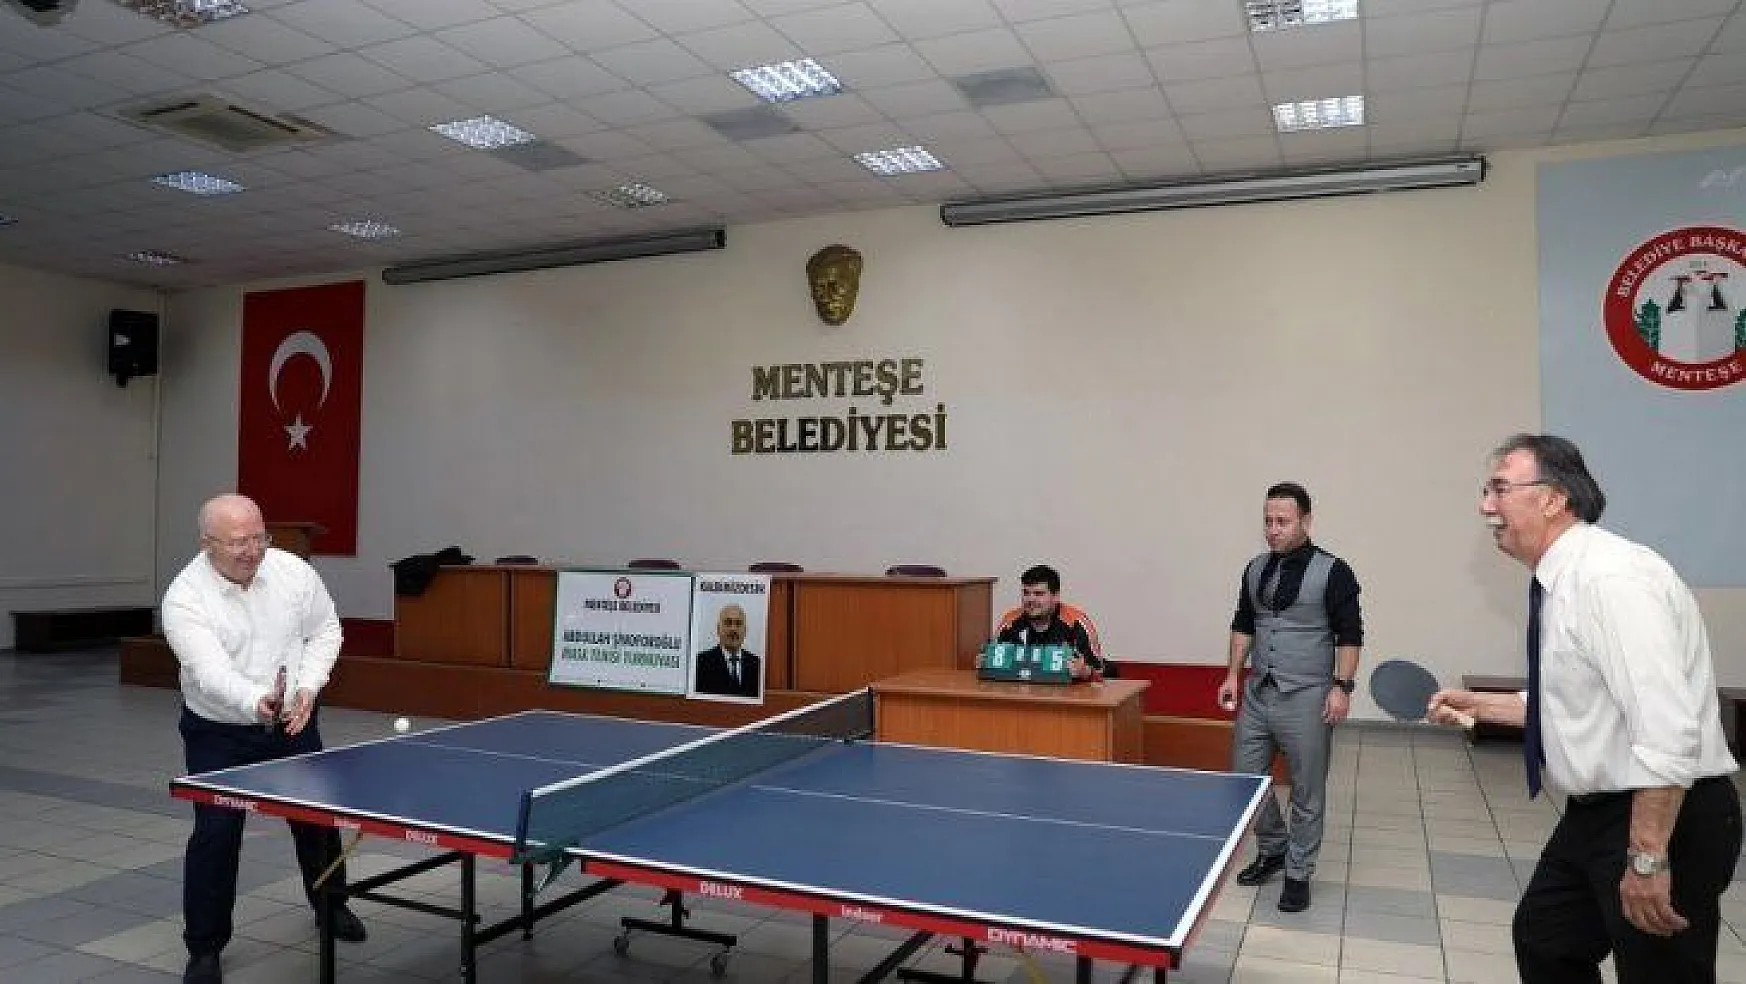 Abdullah Şinoforoğlu Masa Tenisi turnuvası başladı